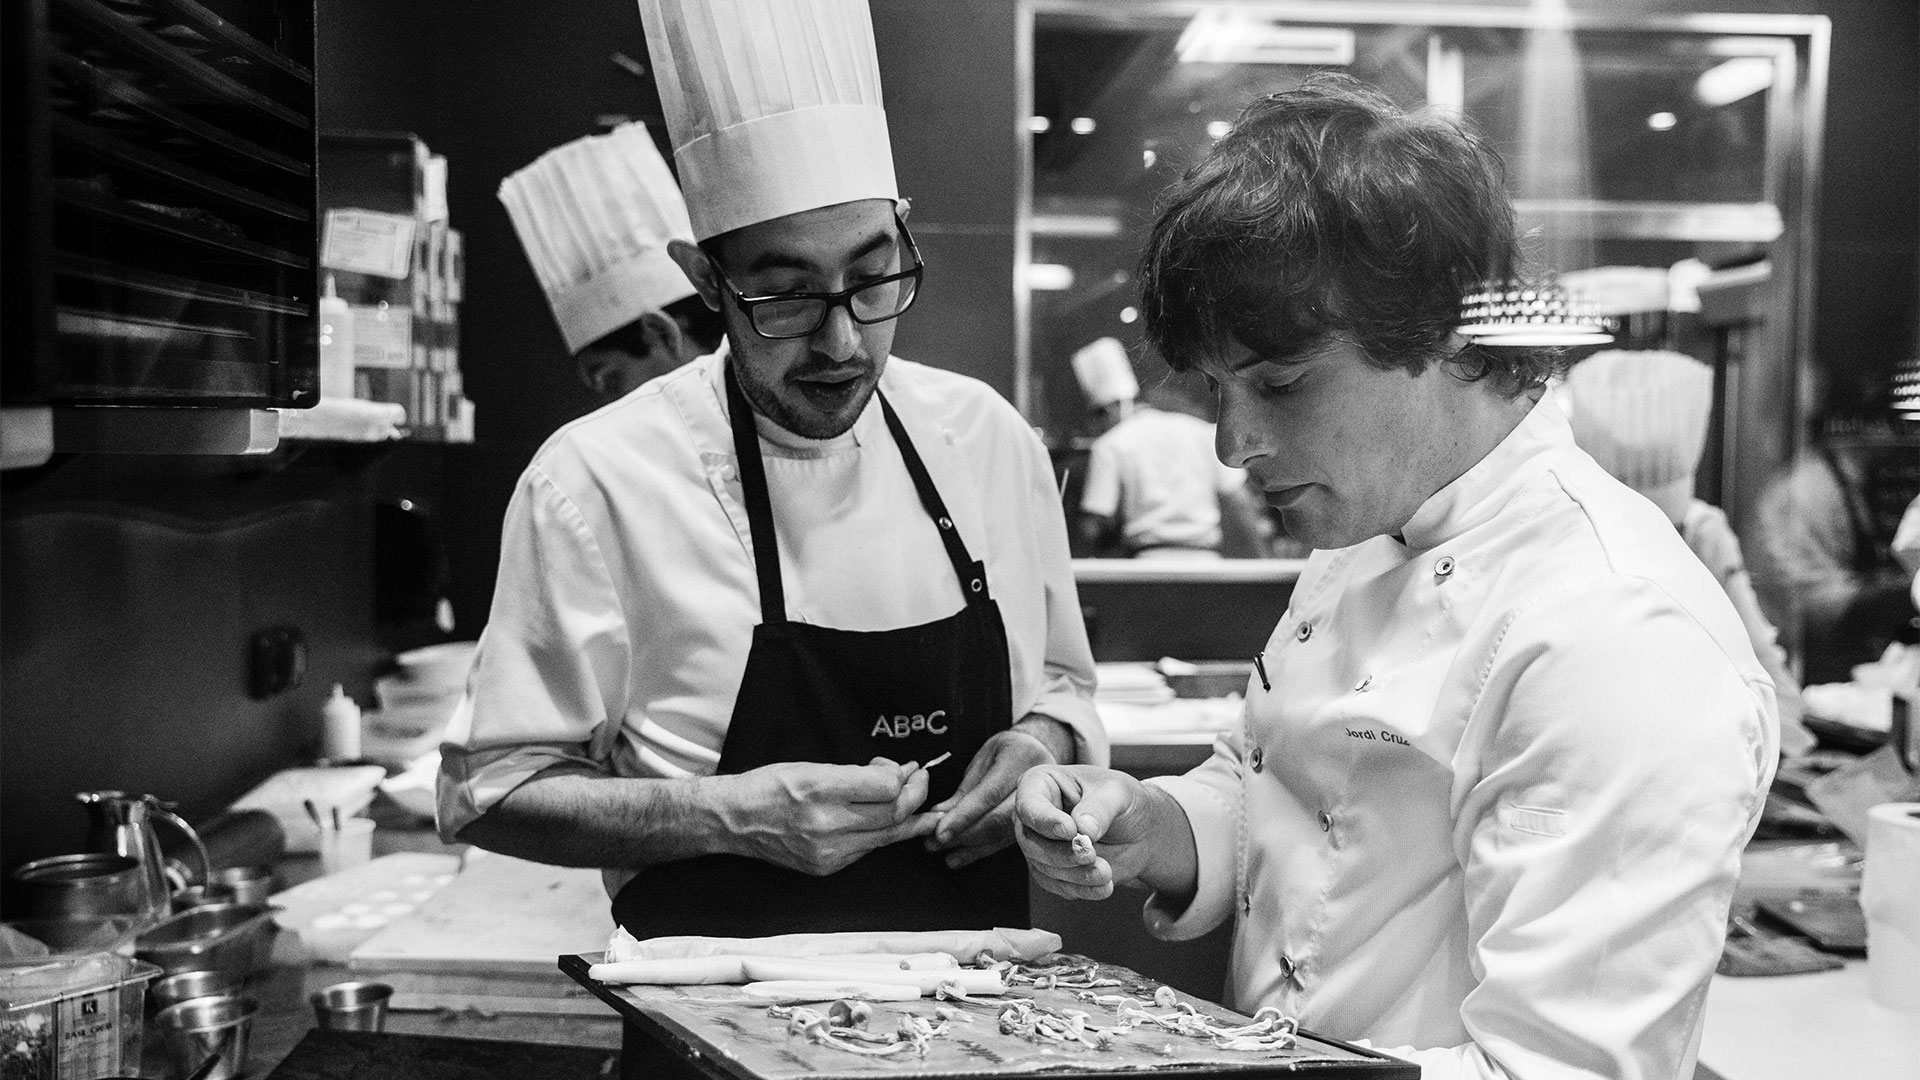 Cómo descubrió Jordi Cruz su vocación por la cocina: “Decidí ser cocinero a raíz de que mi madre estaba enferma”